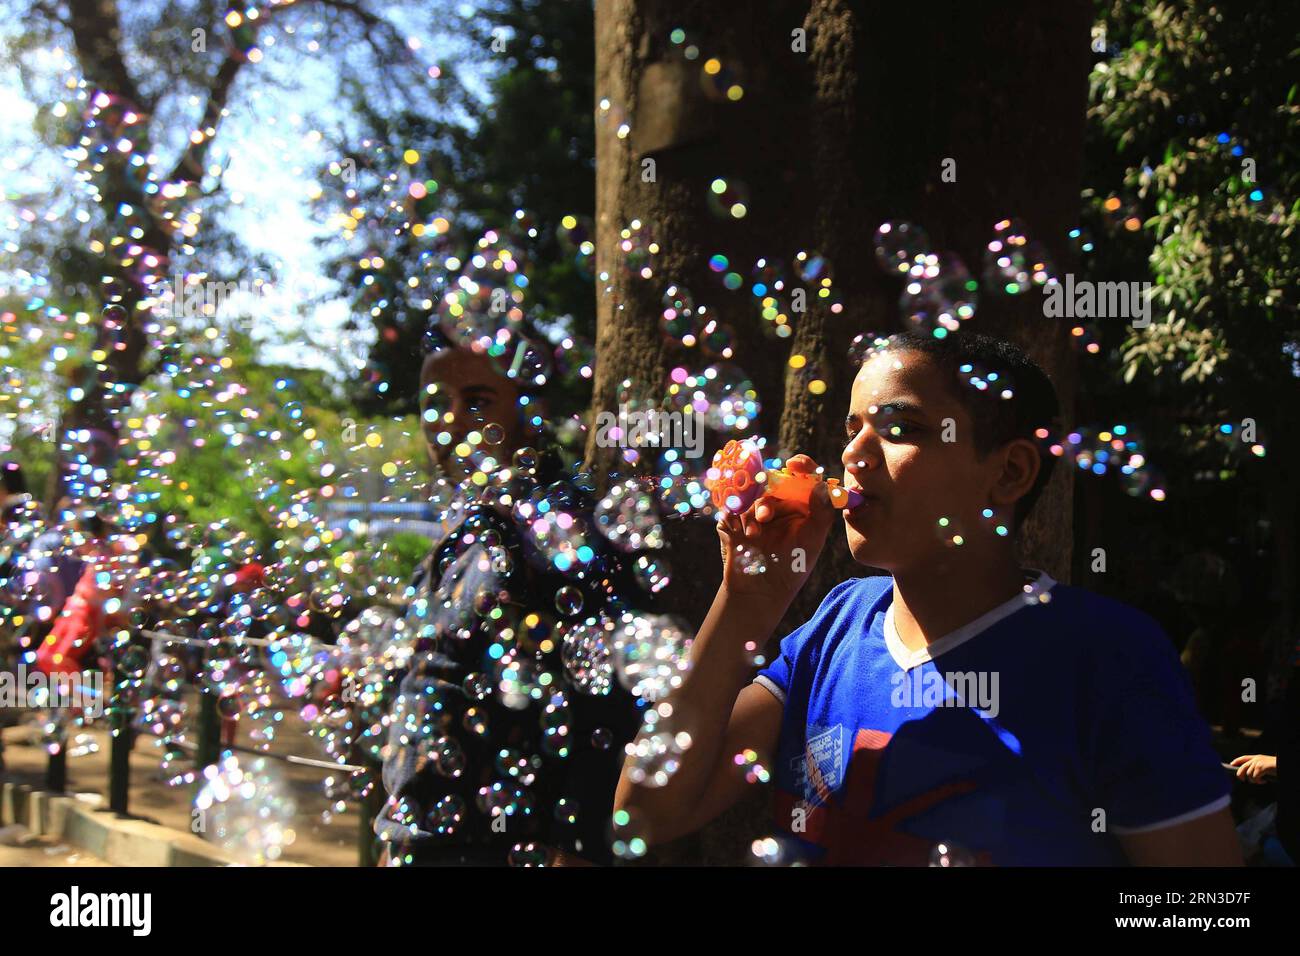 (150413) - CAIRO, 13 aprile 2015 - un ragazzo egiziano soffia bolle allo zoo di Giza al Cairo, Egitto, il 13 aprile 2015. Gli egiziani hanno celebrato il lunedì il tradizionale Sharm El Nassim , o la festa della brezza primaverile, che segna l'inizio della primavera. EGITTO-CAIRO-VITA QUOTIDIANA-PRIMAVERA AhmedxGomaa PUBLICATIONxNOTxINxCHN Cairo 13 aprile 2015 a Egyptian Boy soffia bolle ALLO zoo di Giza al Cairo Egitto IL 13 aprile 2015 gli egiziani hanno celebrato lunedì il tradizionale Sharm El Nassim o il Festival della BREZZA primaverile che segna l'INIZIO della primavera Egitto Cairo Daily Life Spring PUBLICATIONXNOT Foto Stock